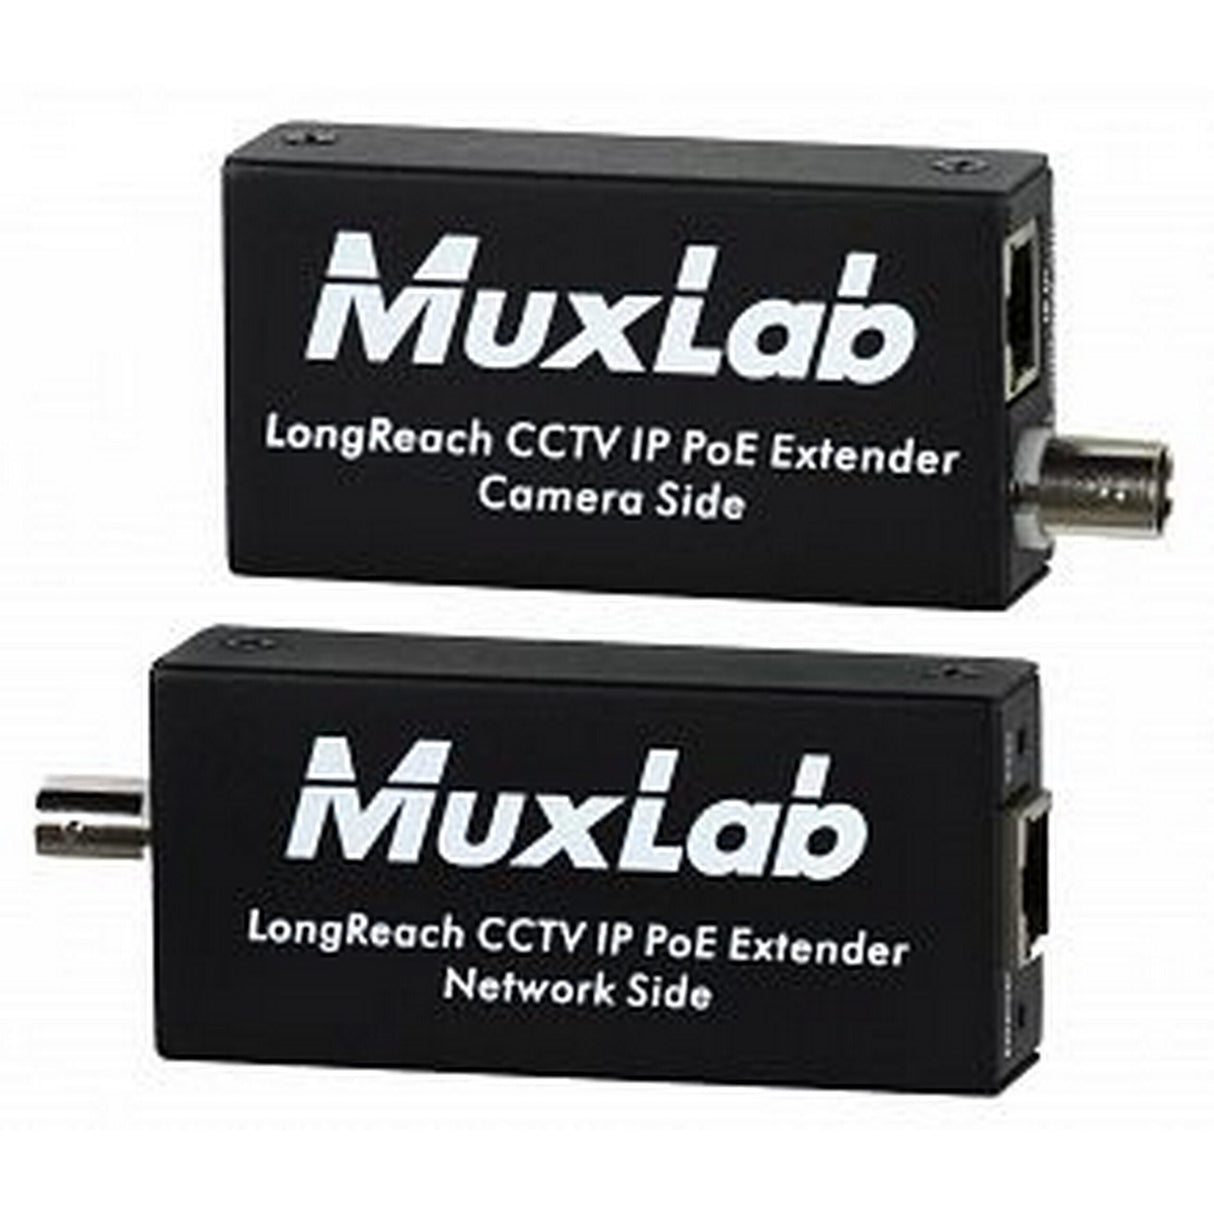 MuxLab 500115 Longreach CCTV IP PoE Extender Kit, 600 Meters